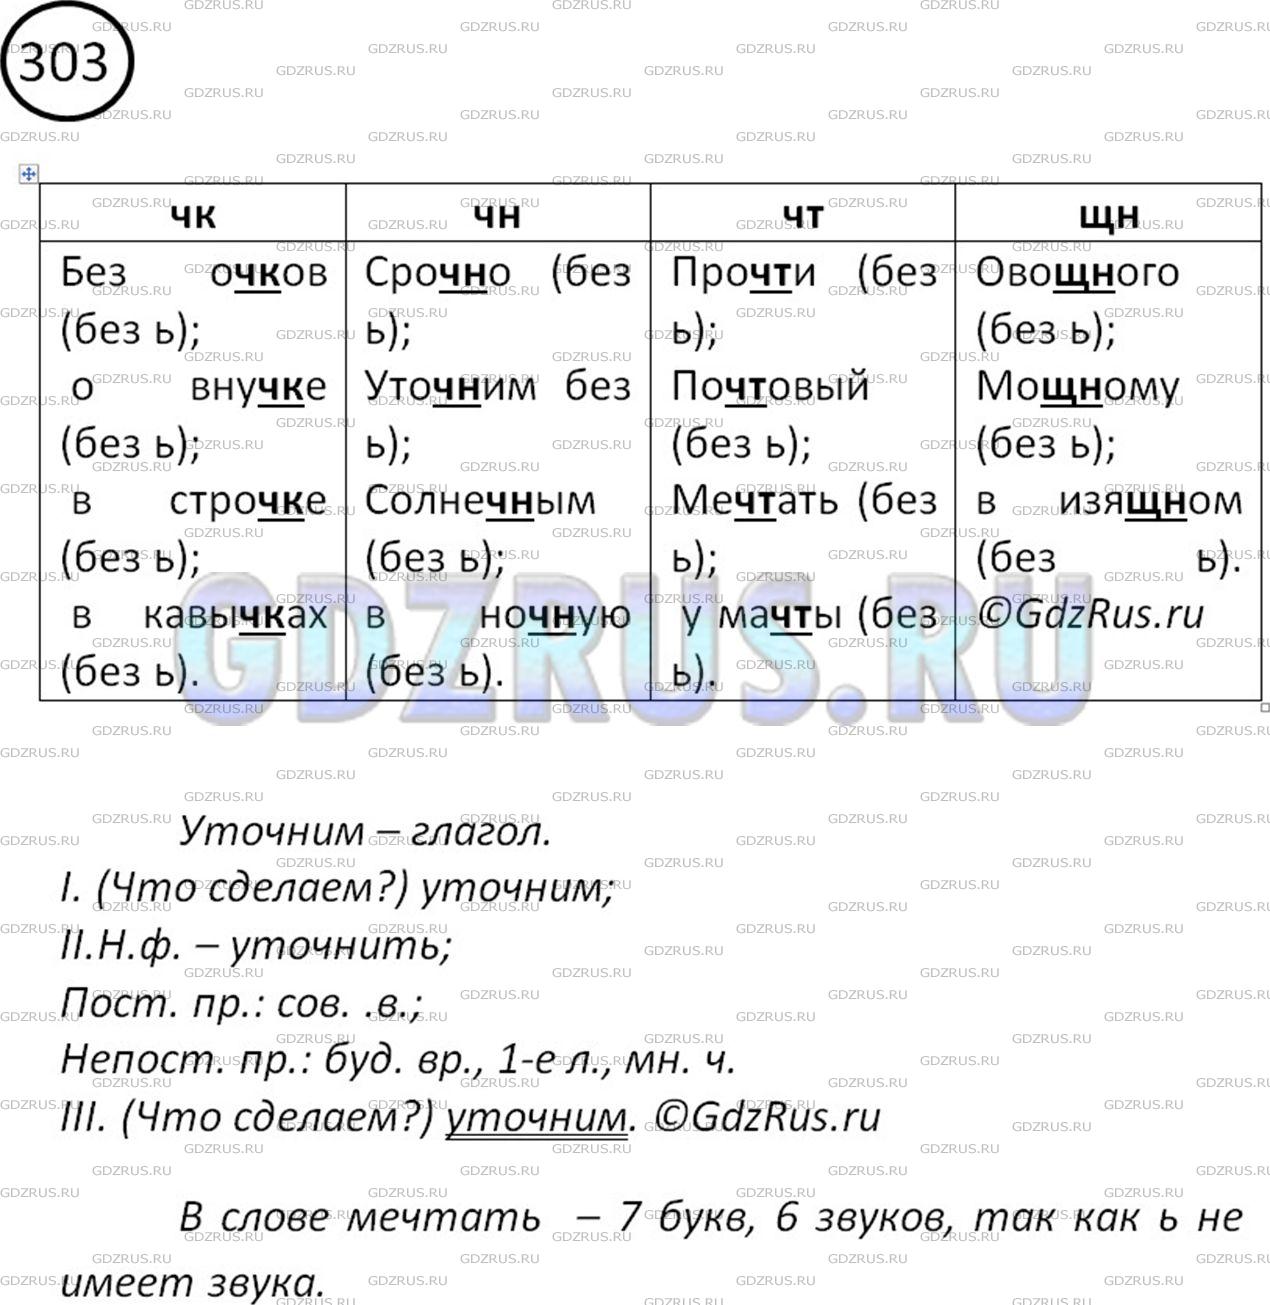 Фото решения 2: Номер №303 из ГДЗ по Русскому языку 5 класс: Ладыженская Т.А. 2012г.